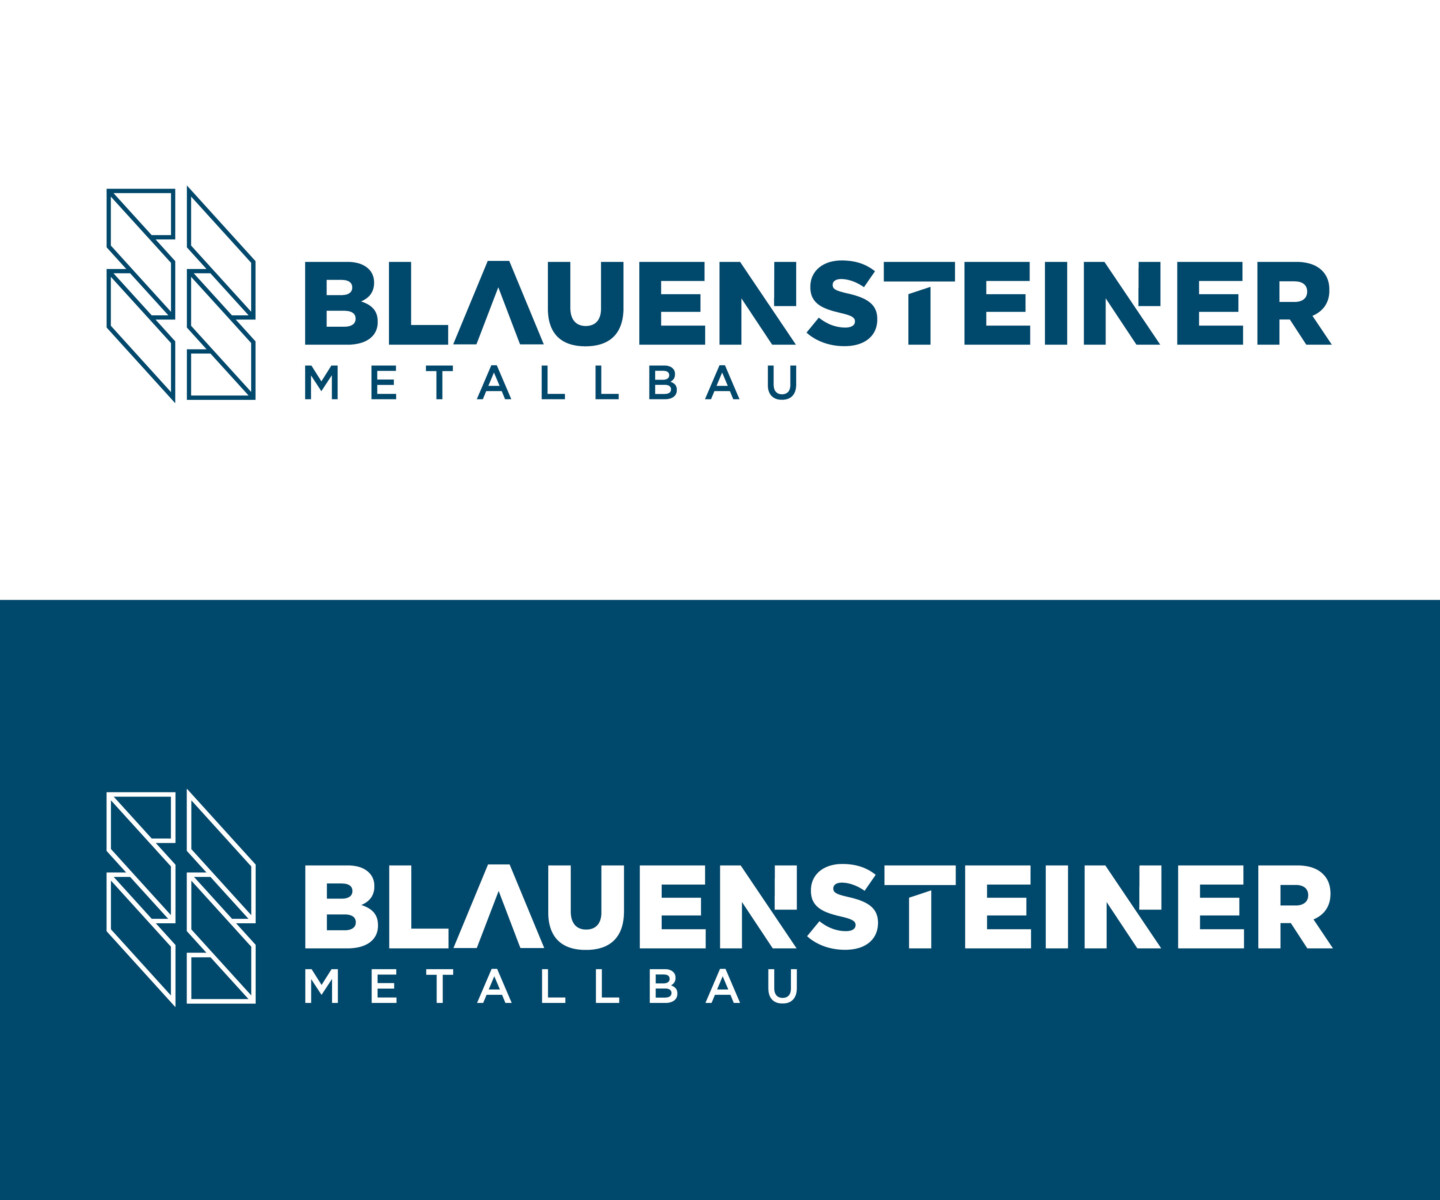 logo-corporate-rosenmayer-b2-werbeagentur.jpg